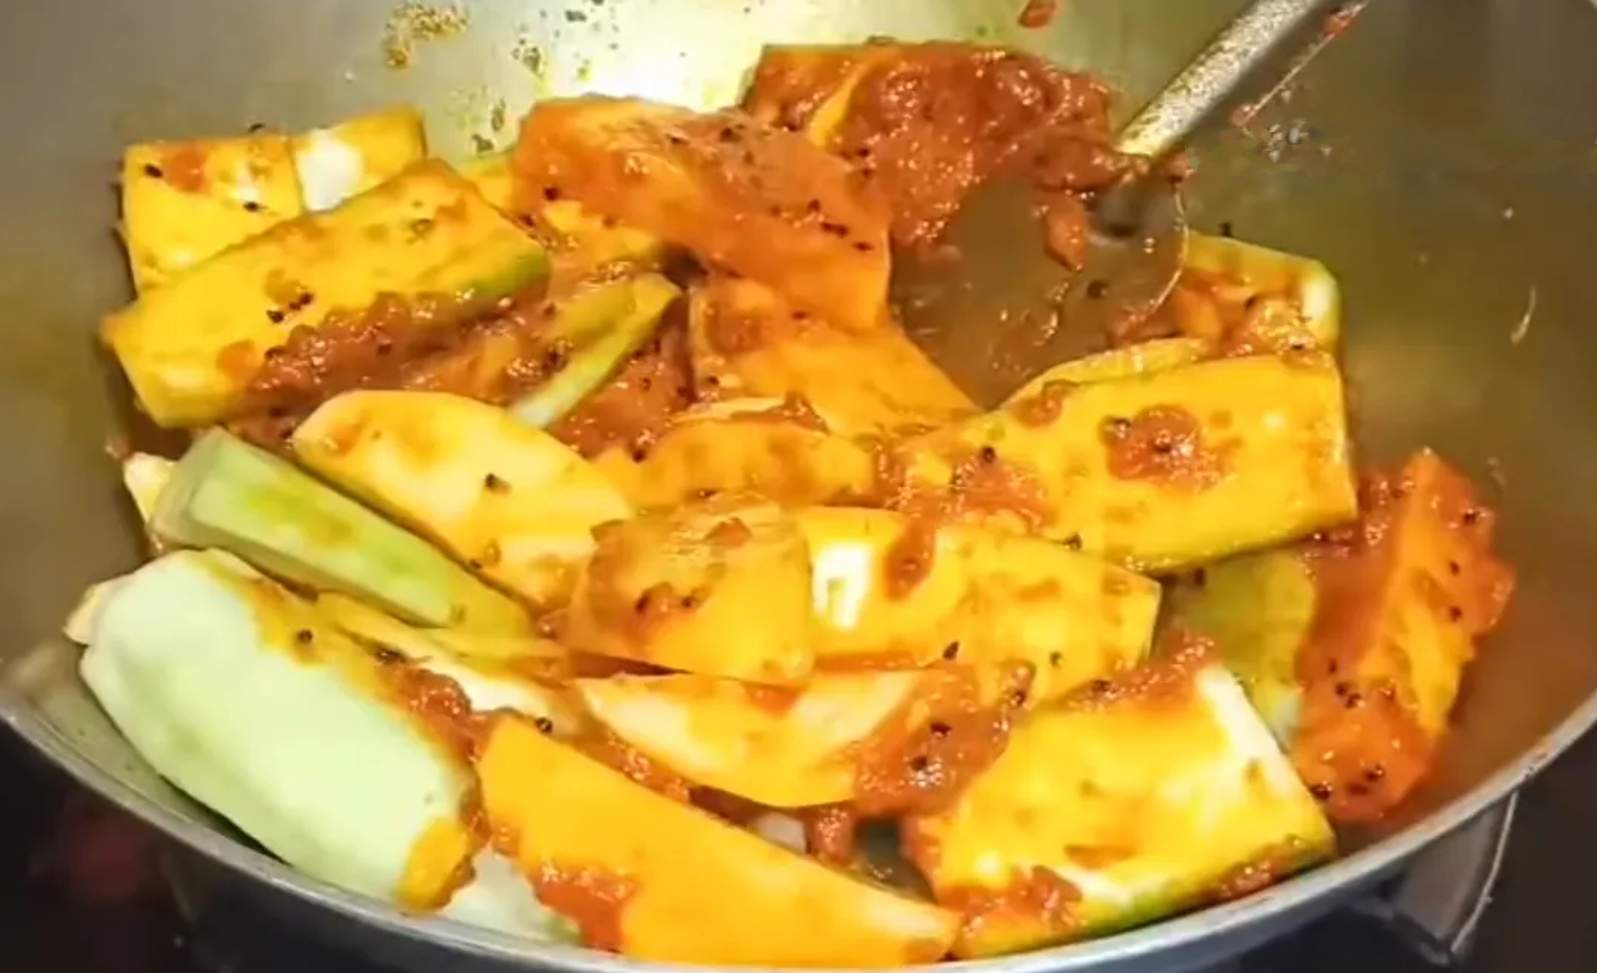 Alu Jhinge Torkari,bengali style jhinge recipe,আলু ঝিঙে তরকারি,আলু ঝিঙে তরকারি রেসিপি,বাঙালি রান্নাবান্না,কম মশলার রান্না